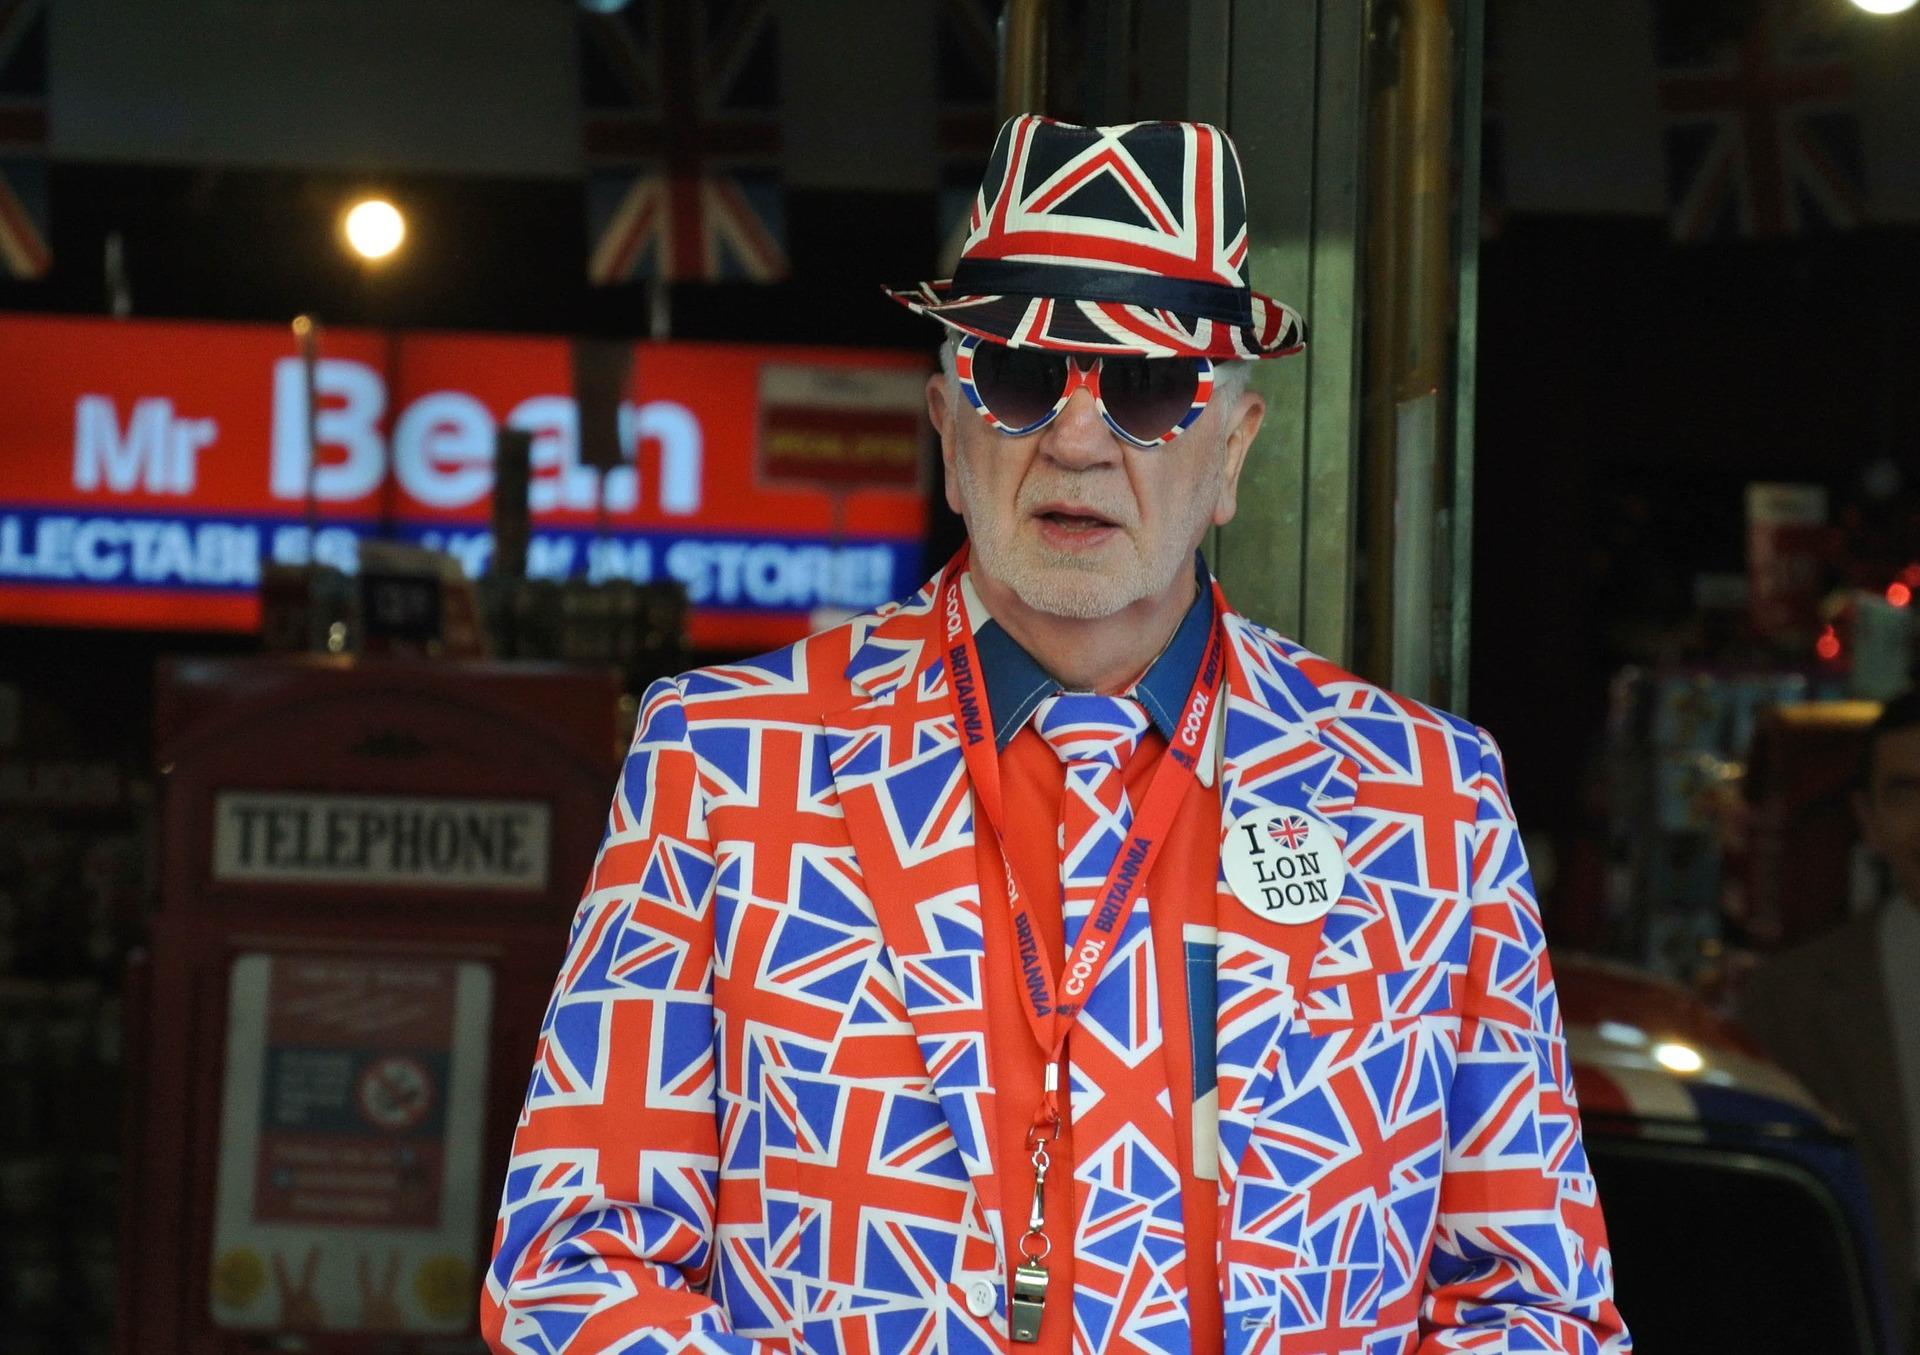 Señor británico con una chapa de 'I love London'